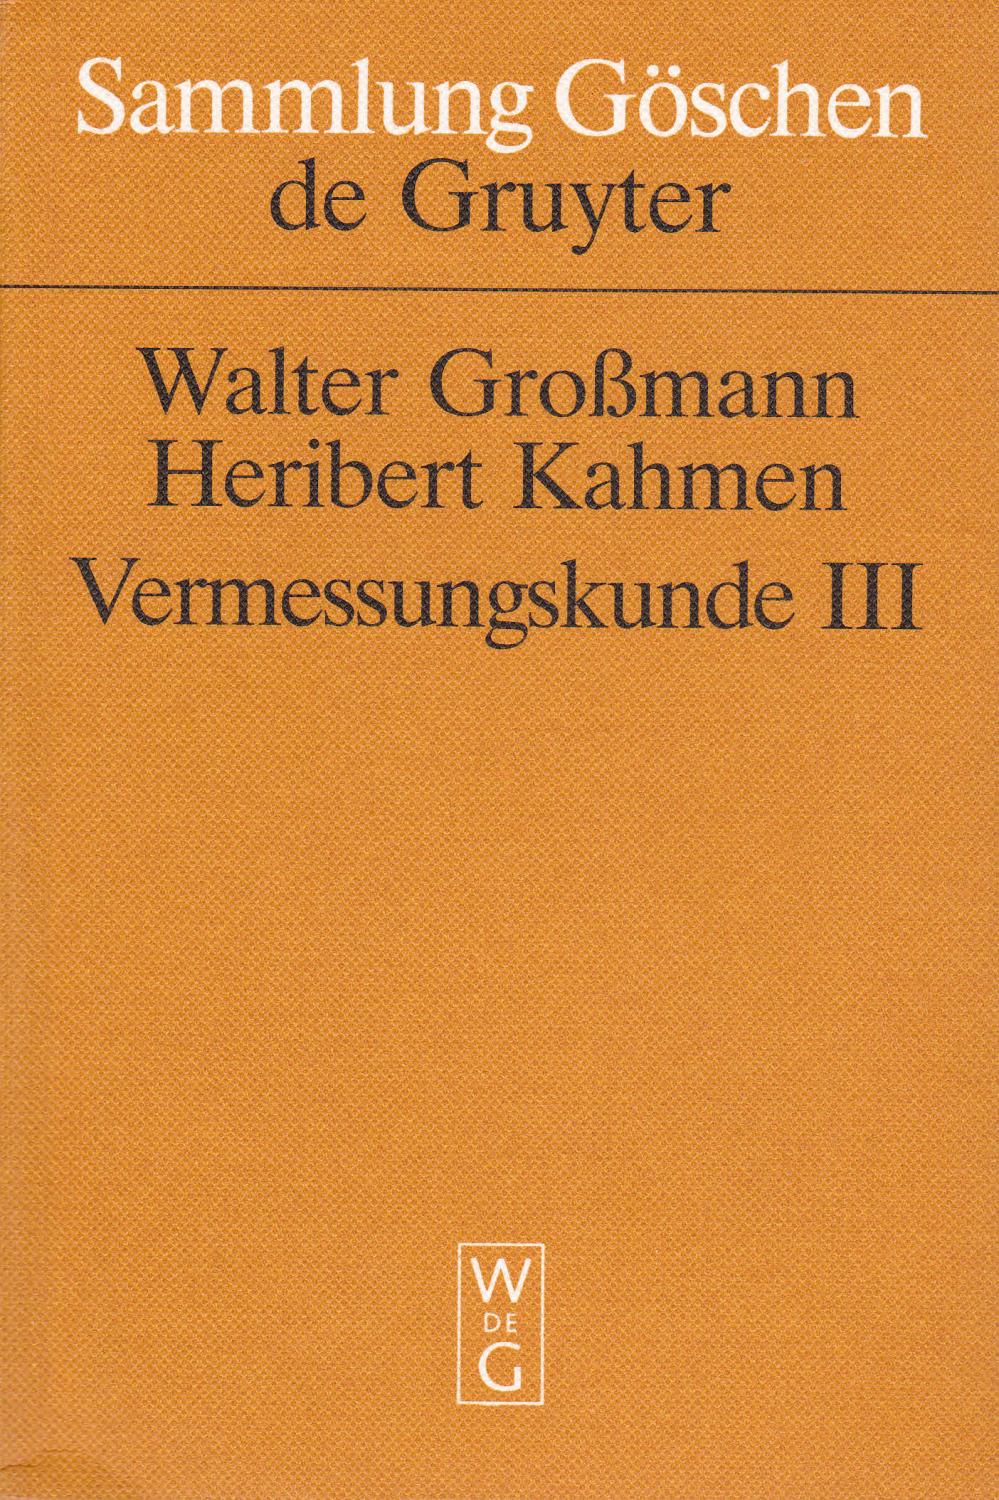 Trigonometrische und barometrische Höhenmessung, Tachymetrie und Ingenieurgeodäsie: 2162 (Sammlung Göschen)